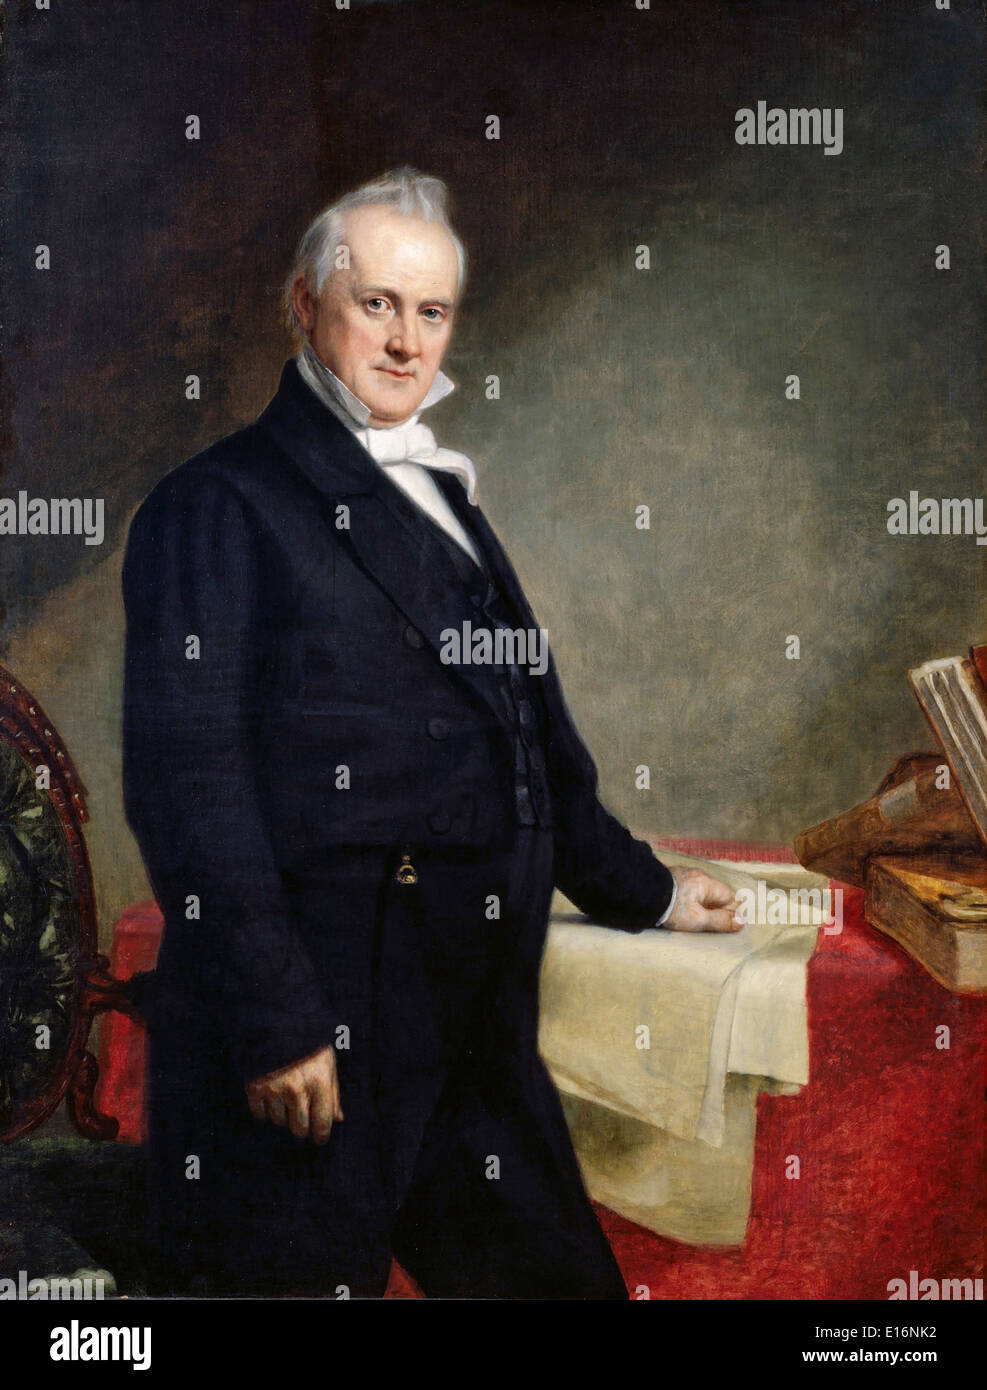 Portrait de James Buchanan par George Peter Alexander Healy, 1859 Banque D'Images